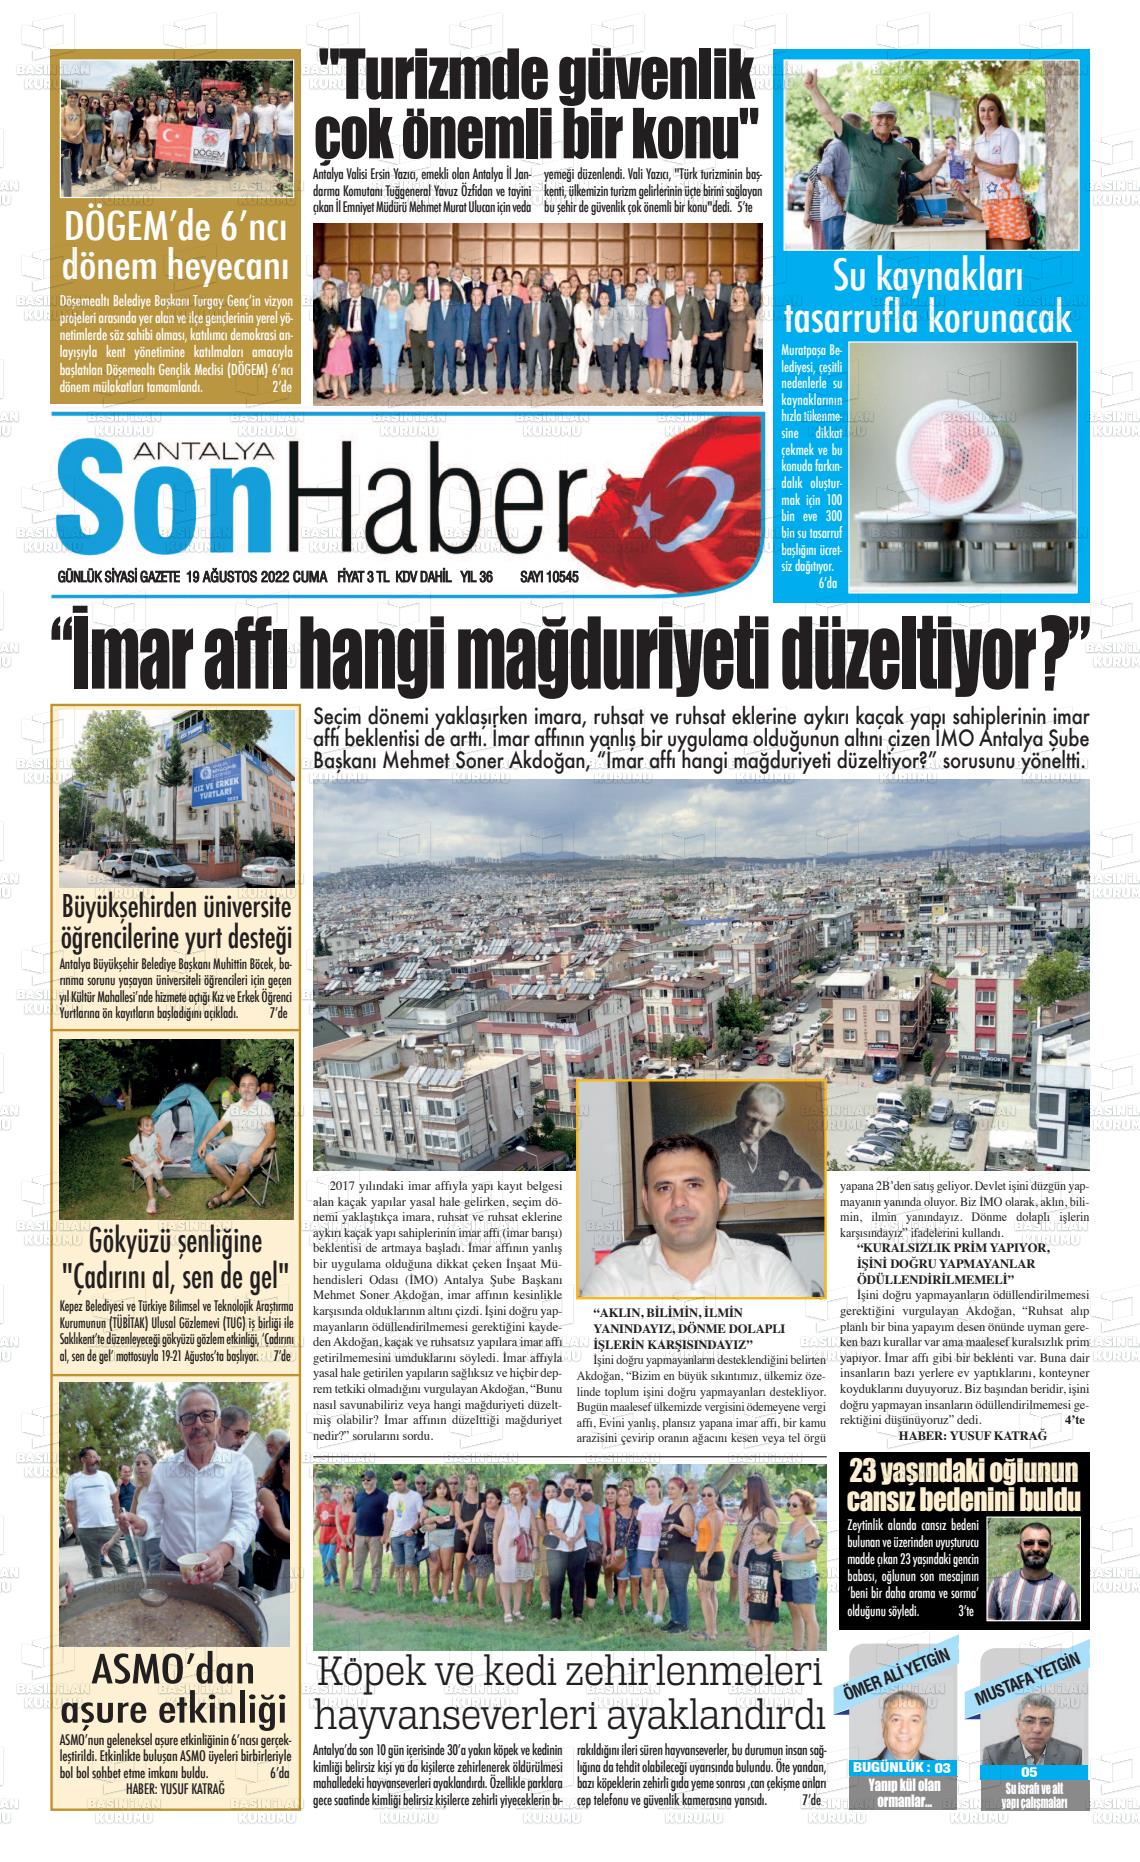 19 Ağustos 2022 Antalya Son Haber Gazete Manşeti